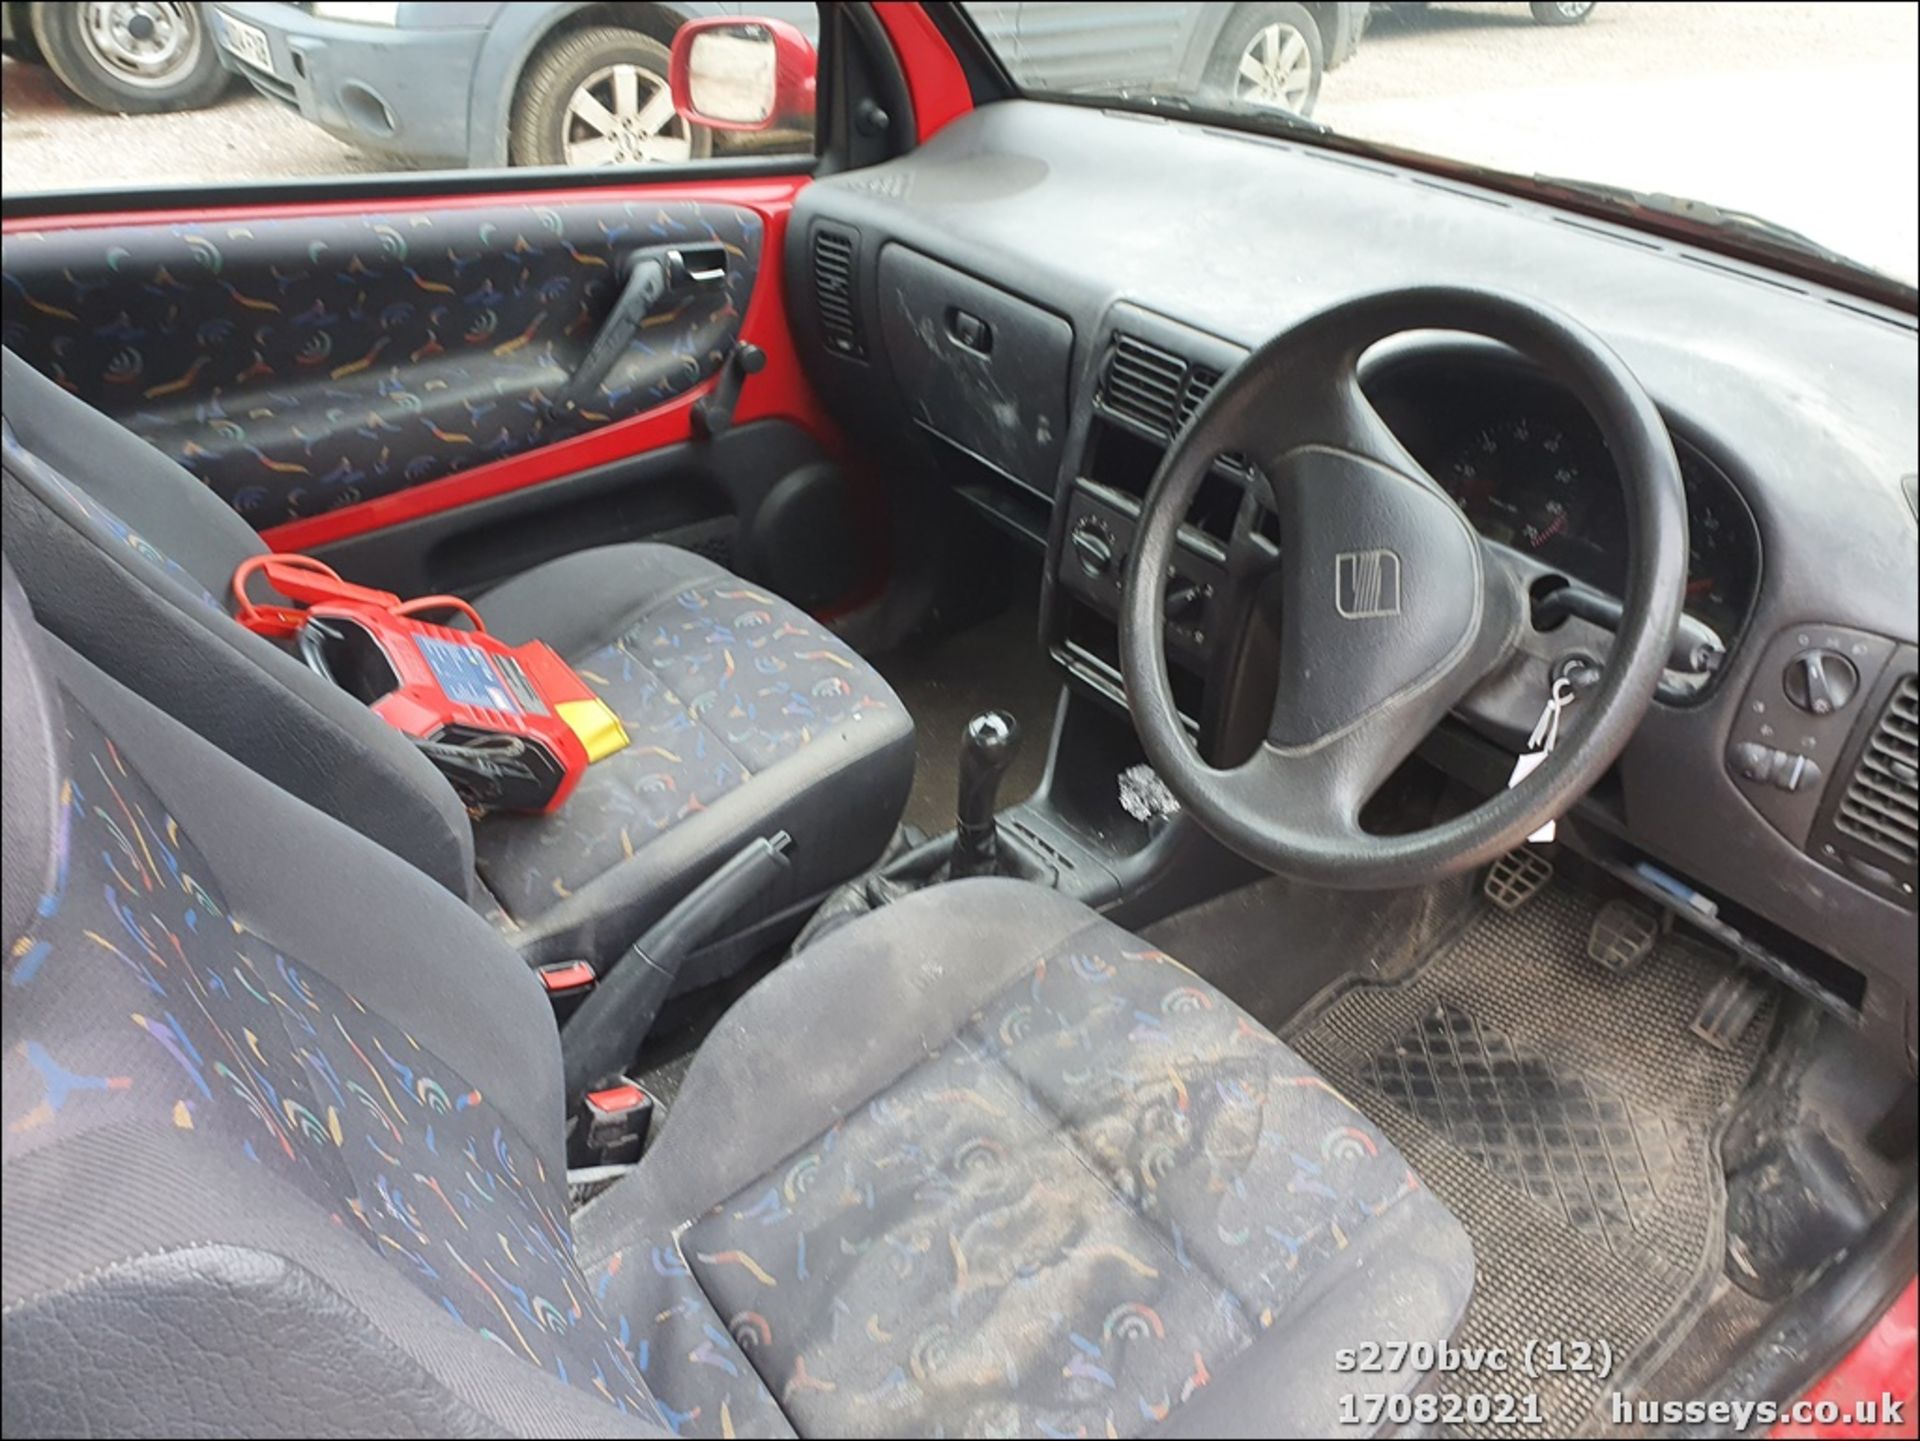 1999 SEAT AROSA 1.0 MPI - 998cc 3dr Hatchback (Red, 79k) - Image 12 of 14